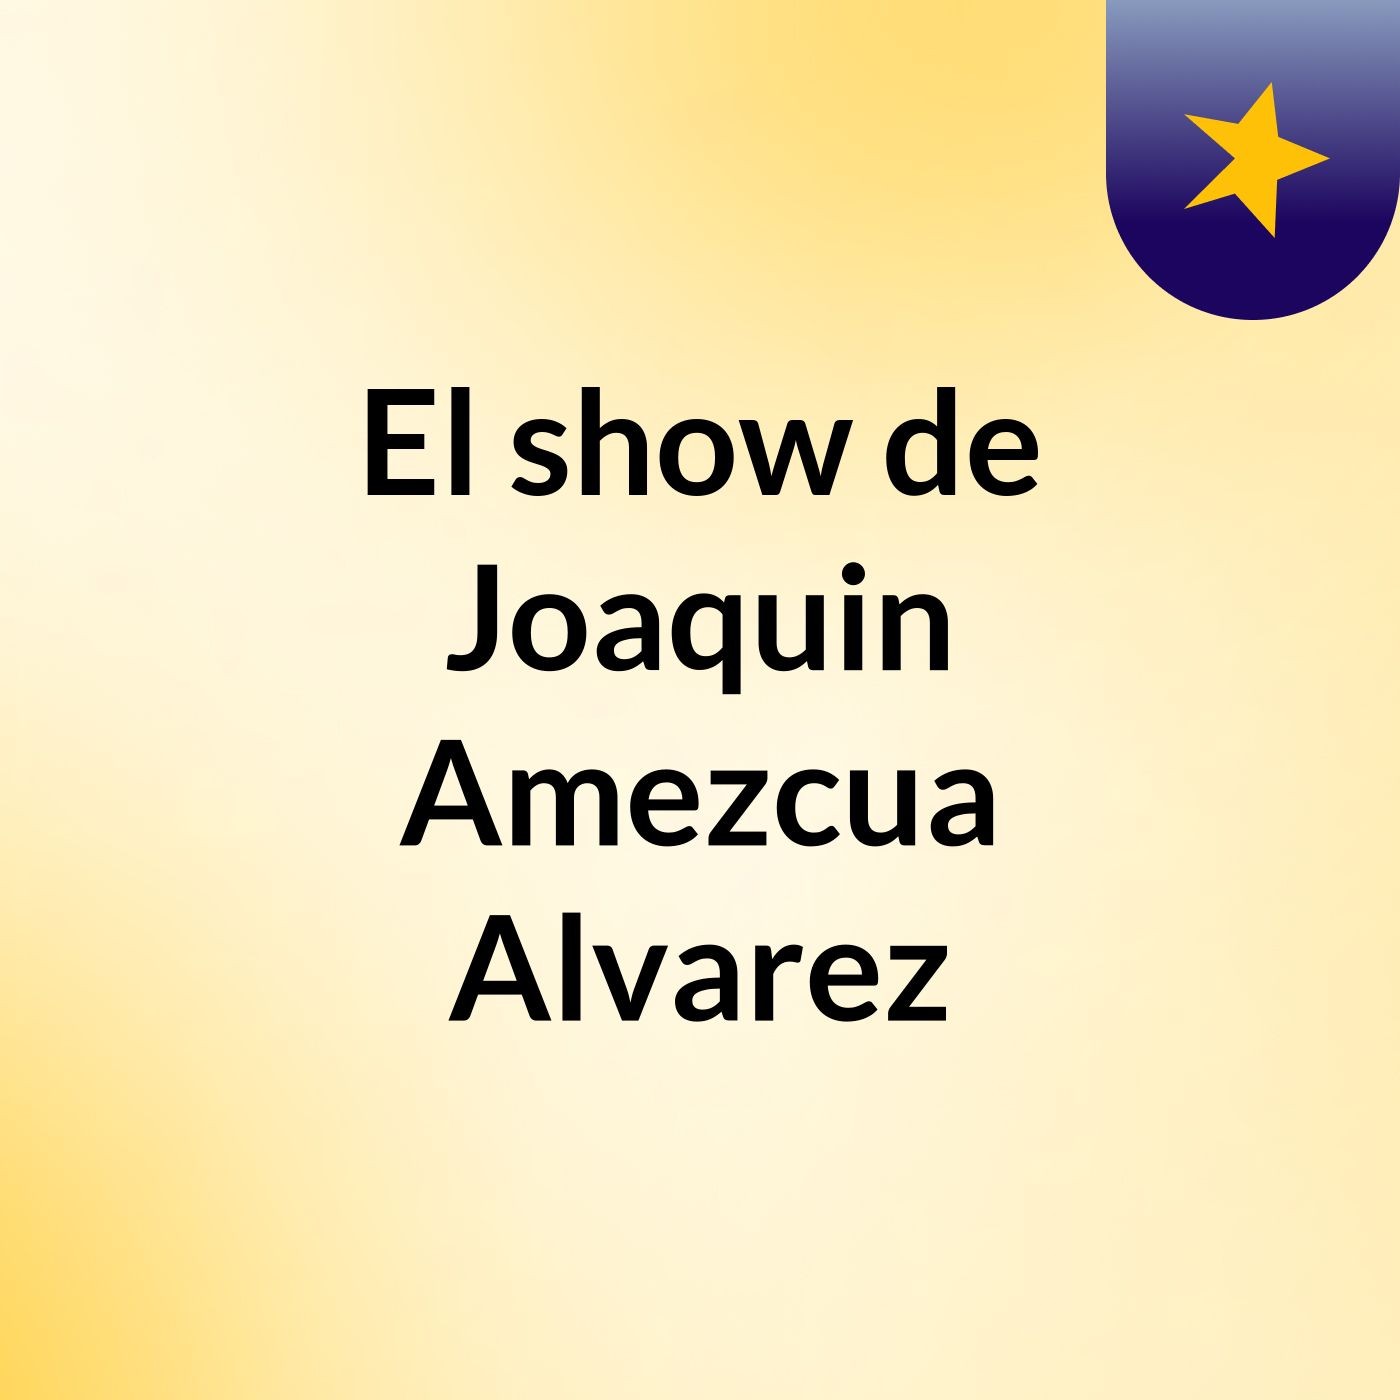 El show de Joaquin Amezcua Alvarez